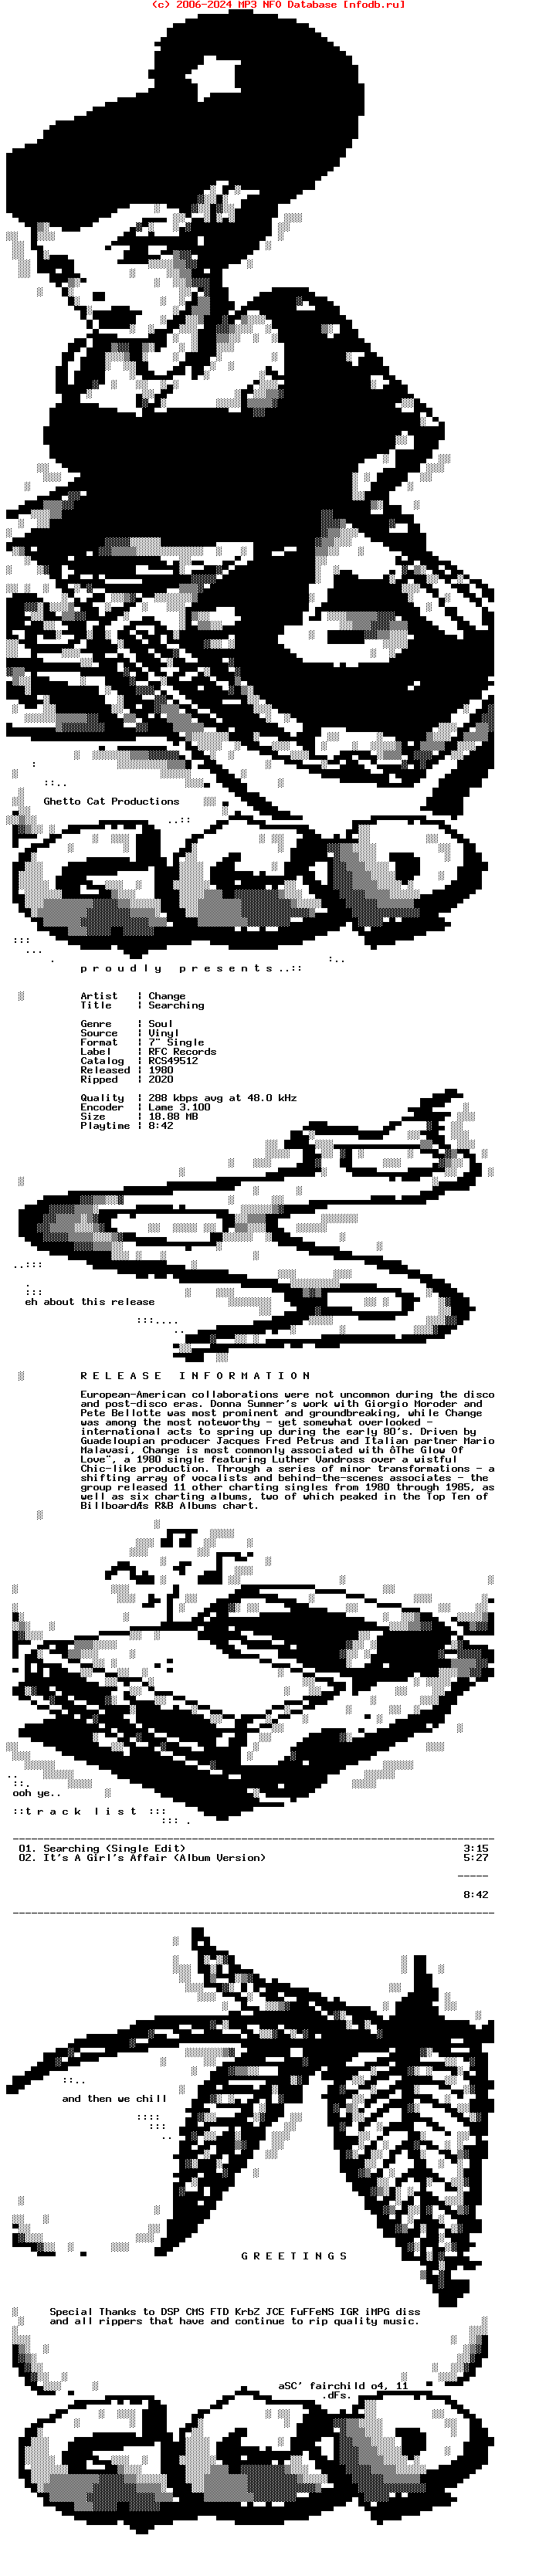 Change-Searching-VLS-1980-GCP